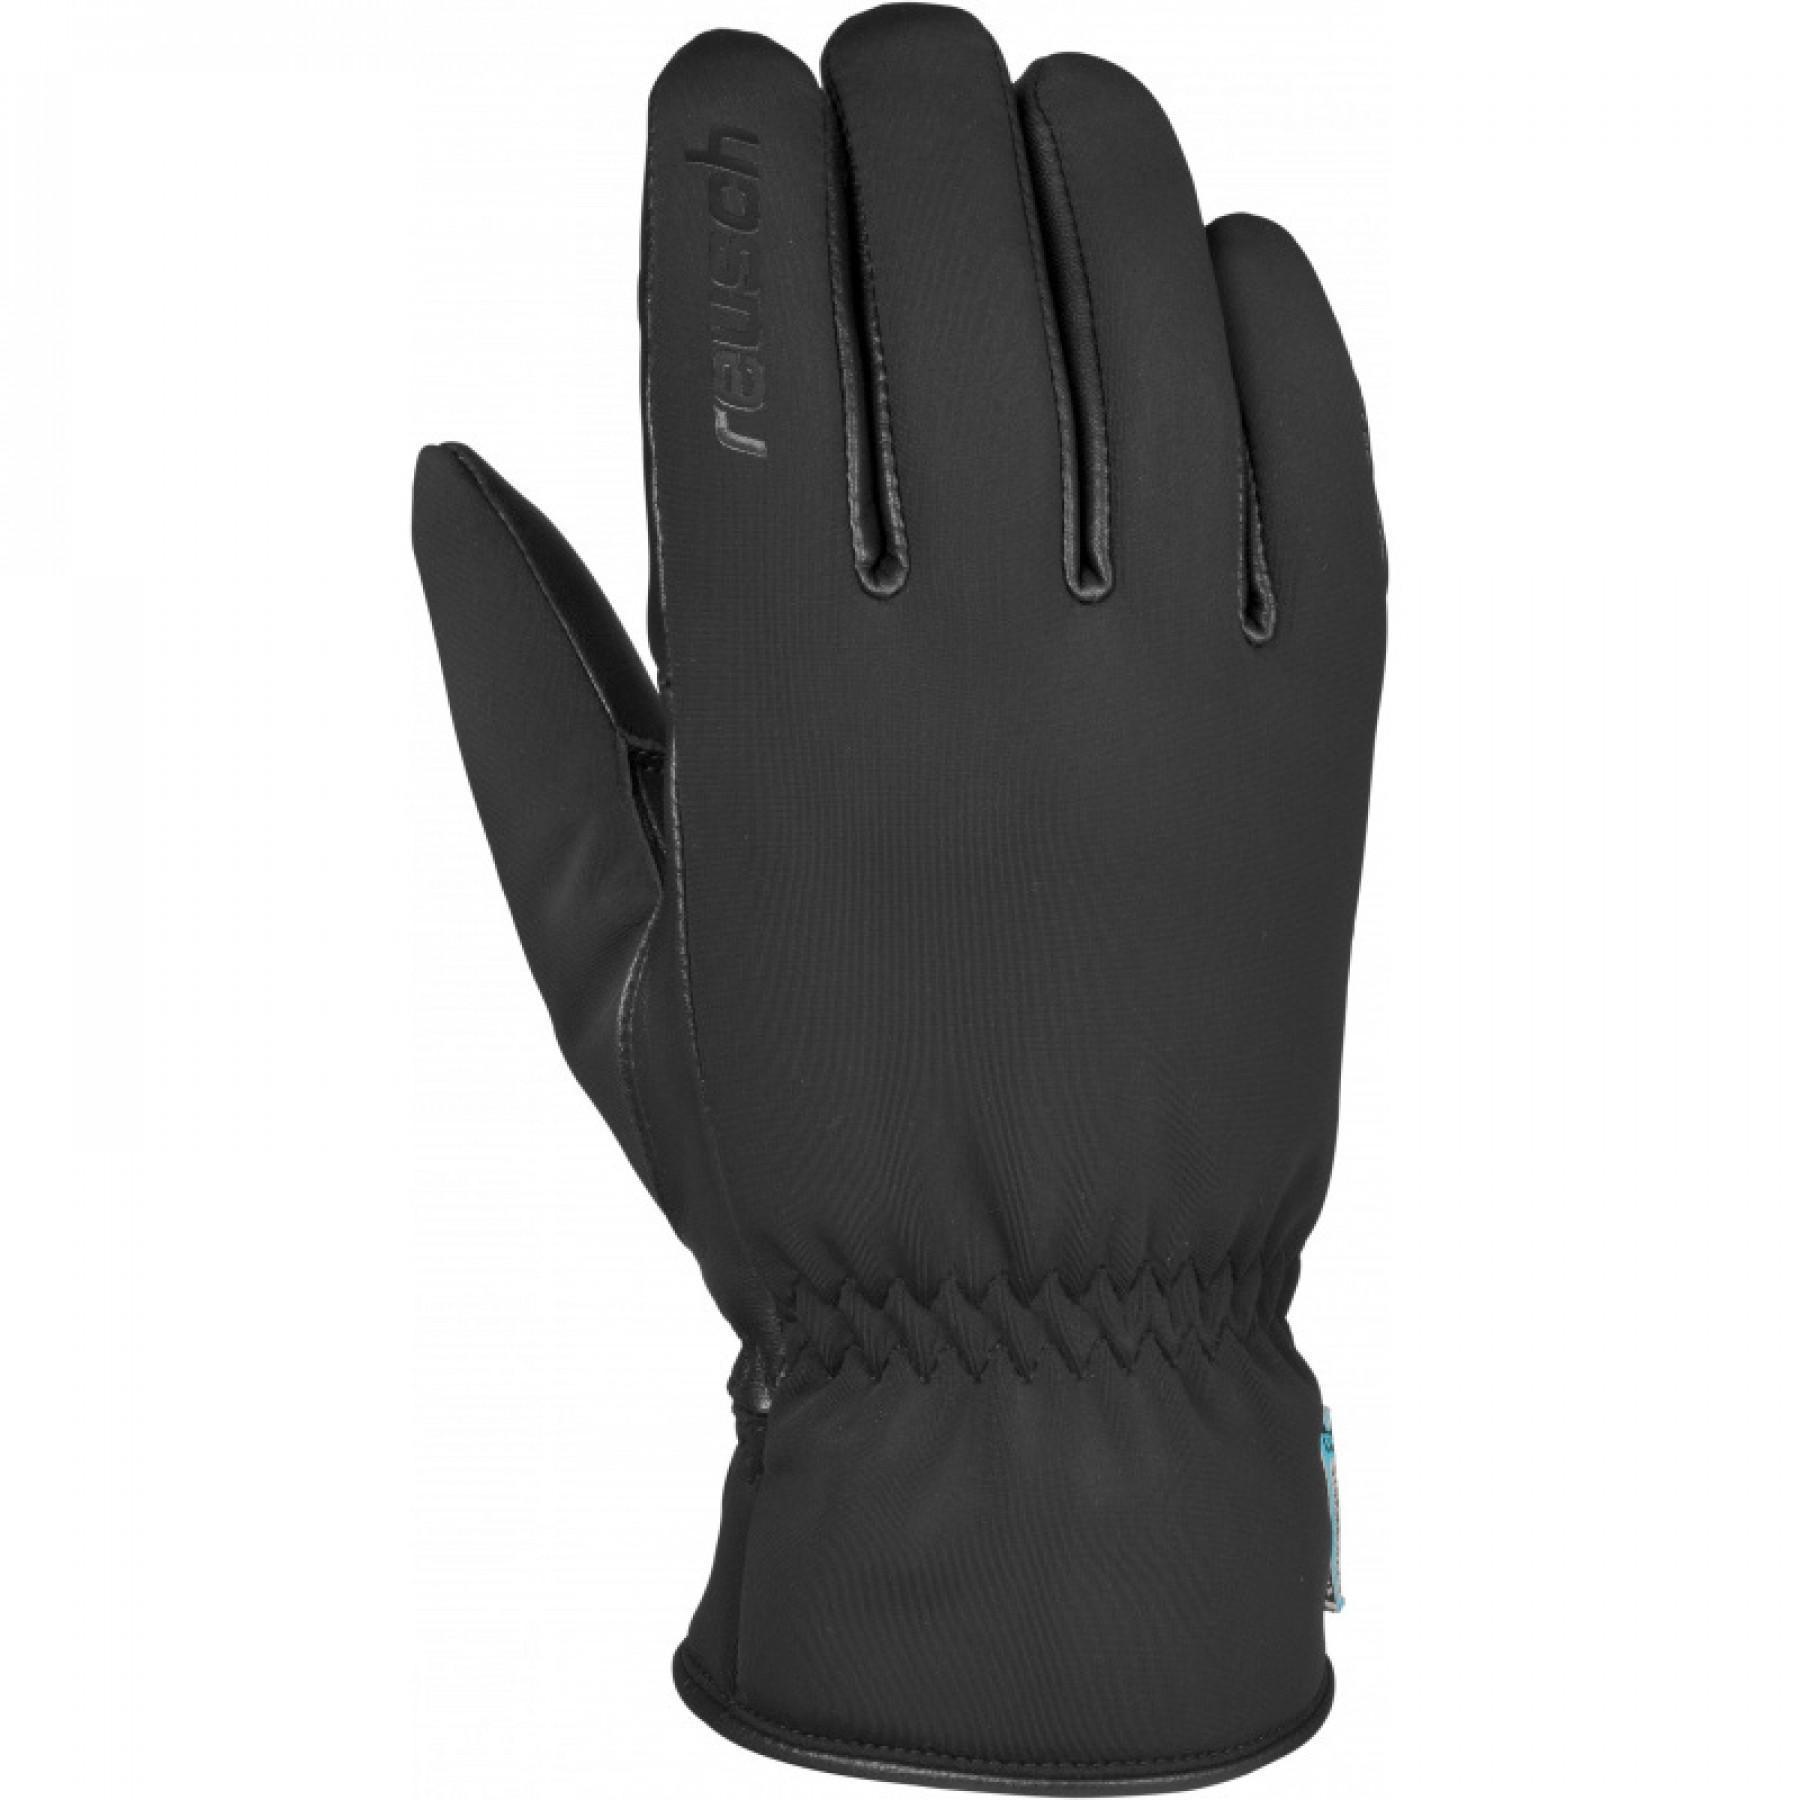 Gloves Reusch Roger Stormbloxx